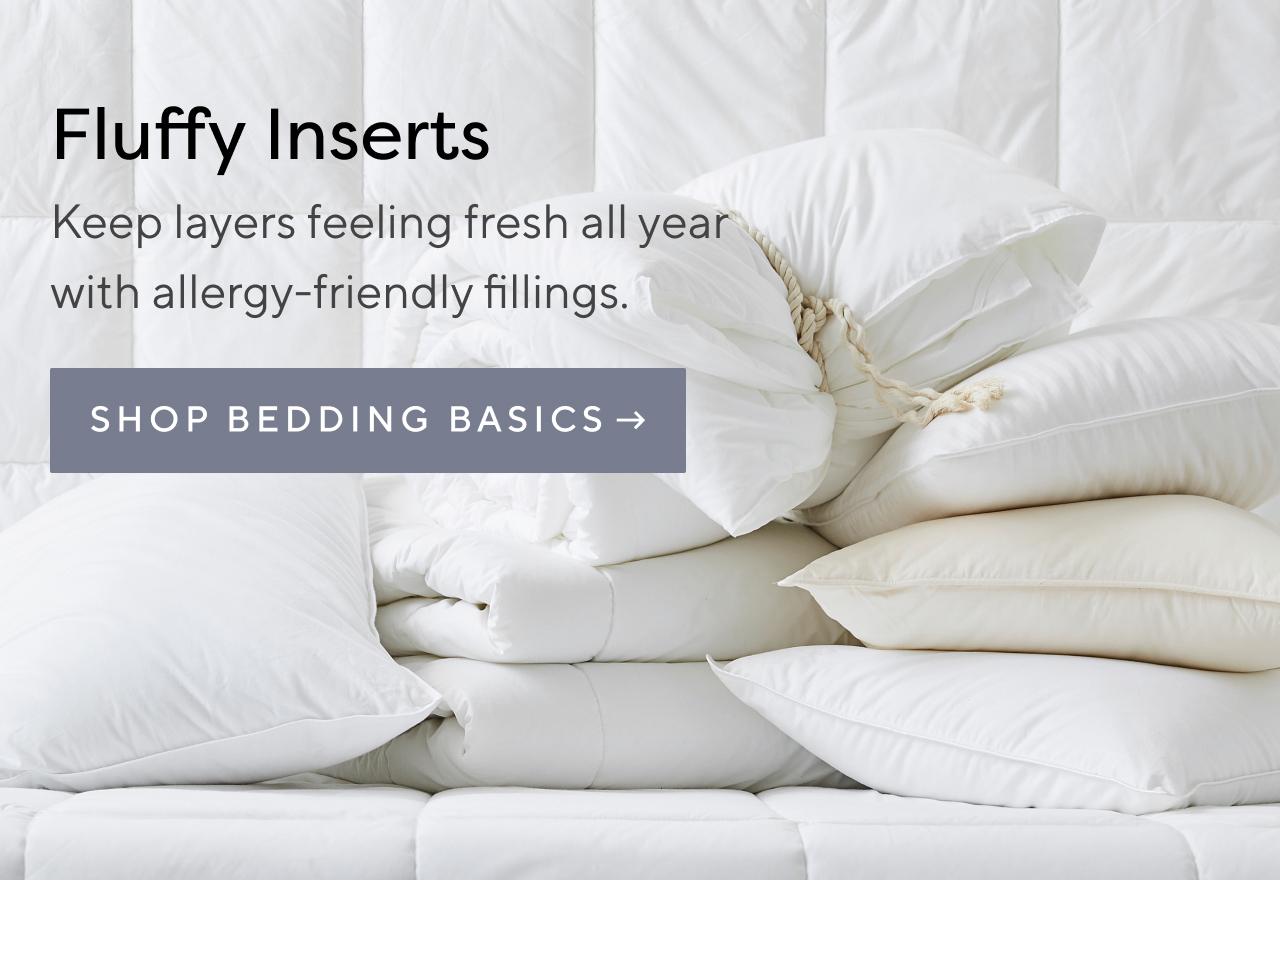 Fluffy inserts. Shop bedding basics